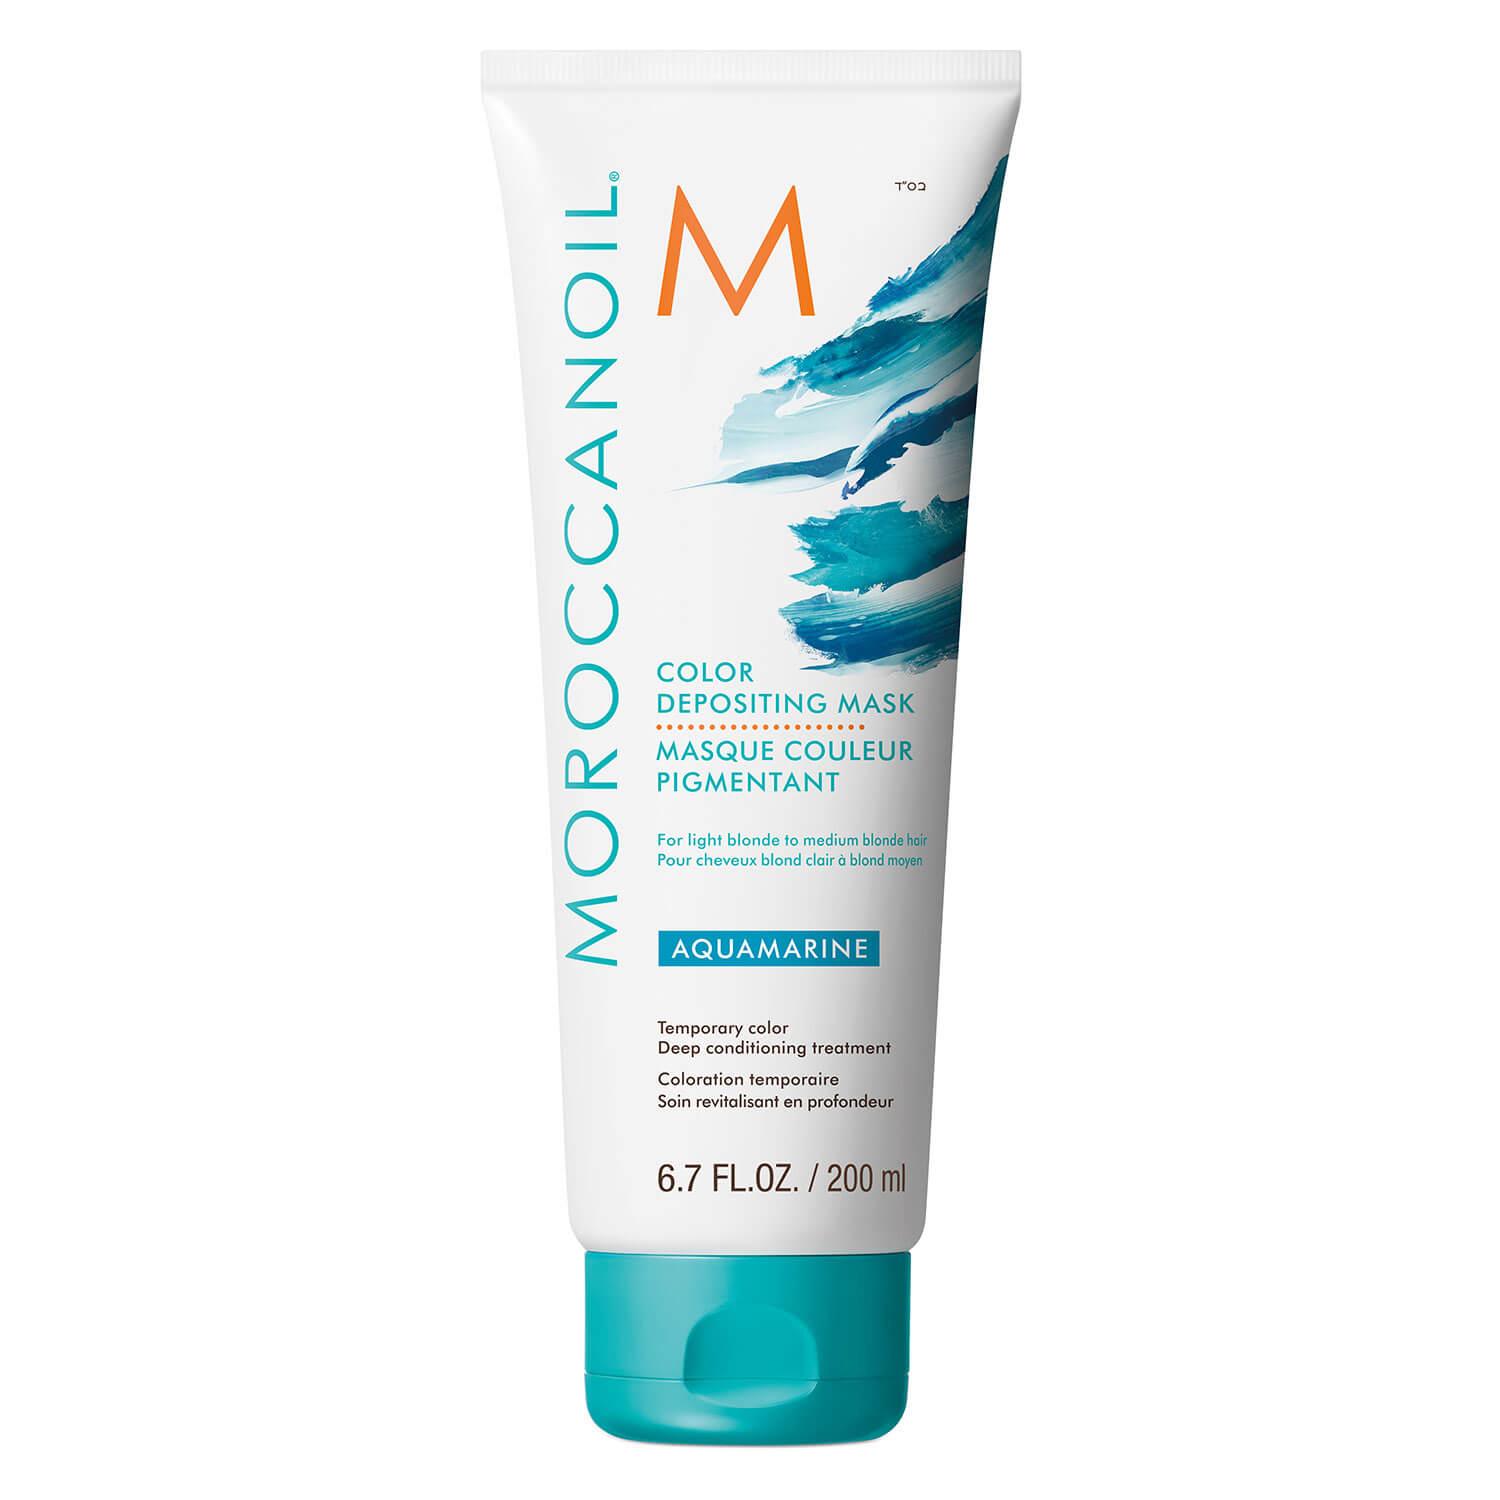 Moroccanoil - Masque Couleur Pigmentant Aquamarine